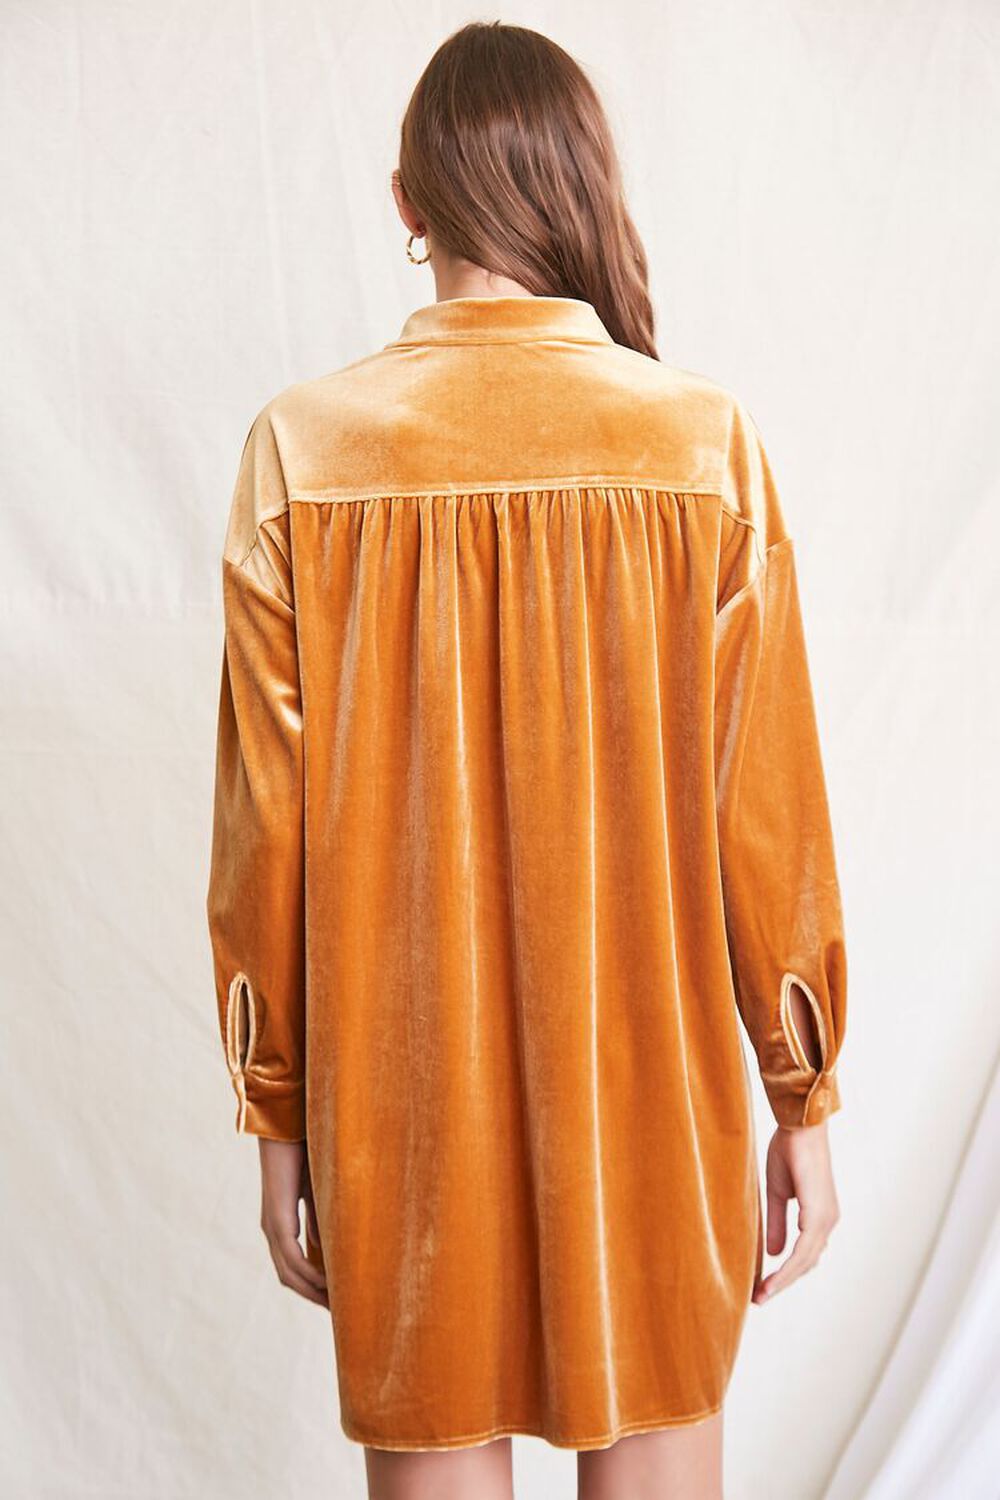 CAMEL Velour Mini Shirt Dress, image 3